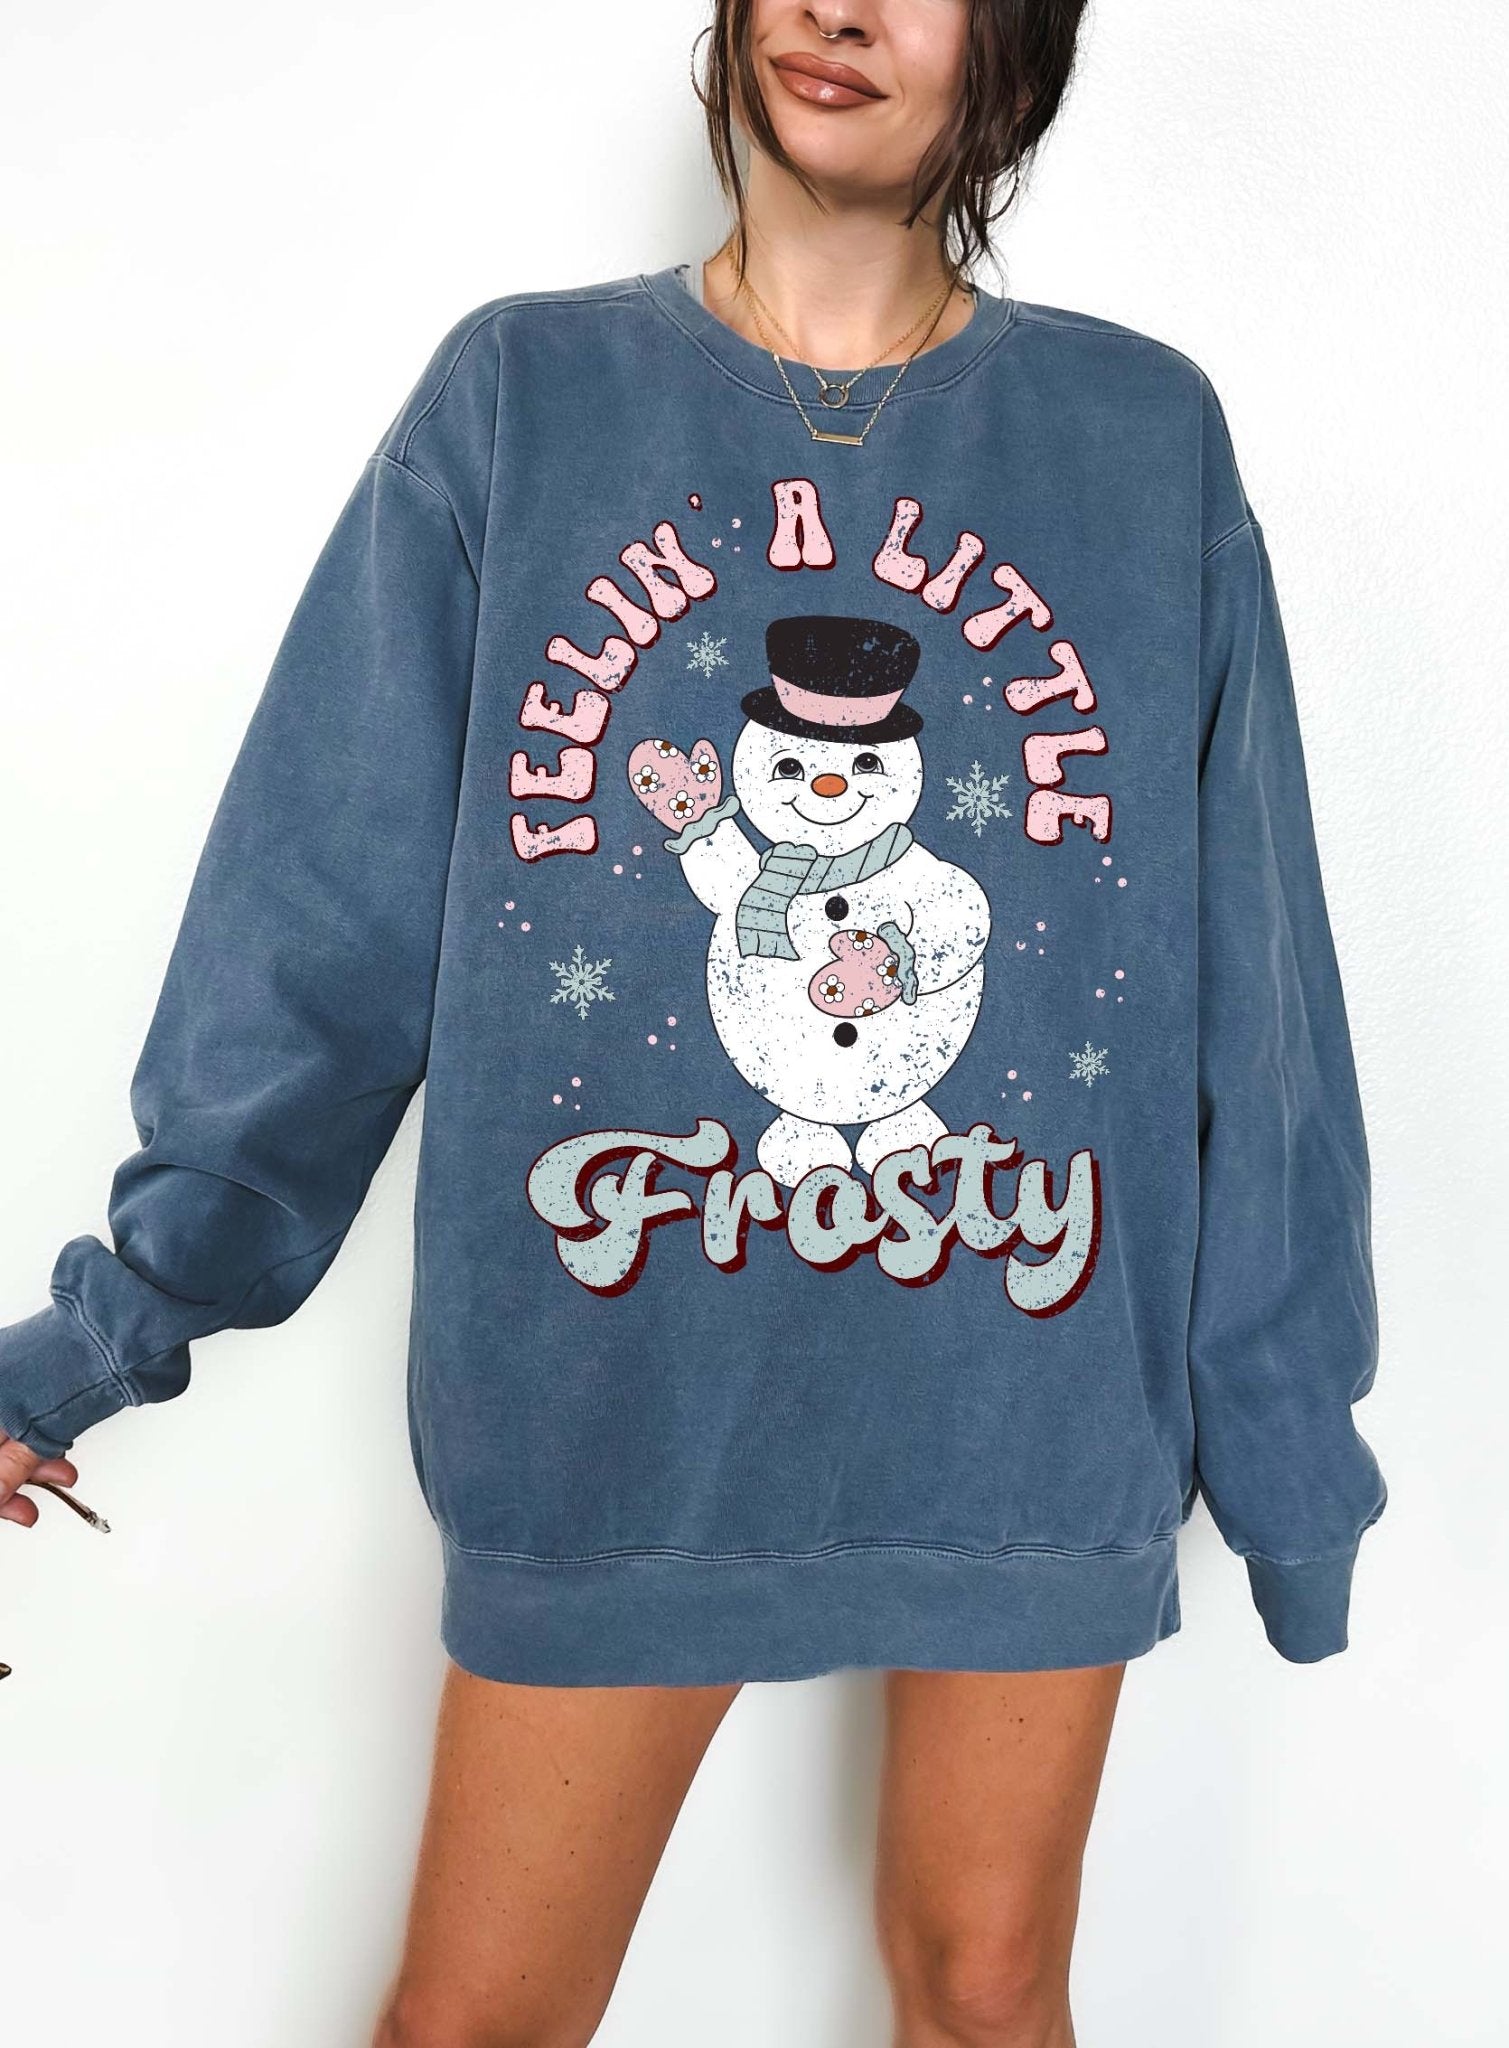 Feelin A Little Frosty Crew Christmas Sweatshirt - UntamedEgo LLC.